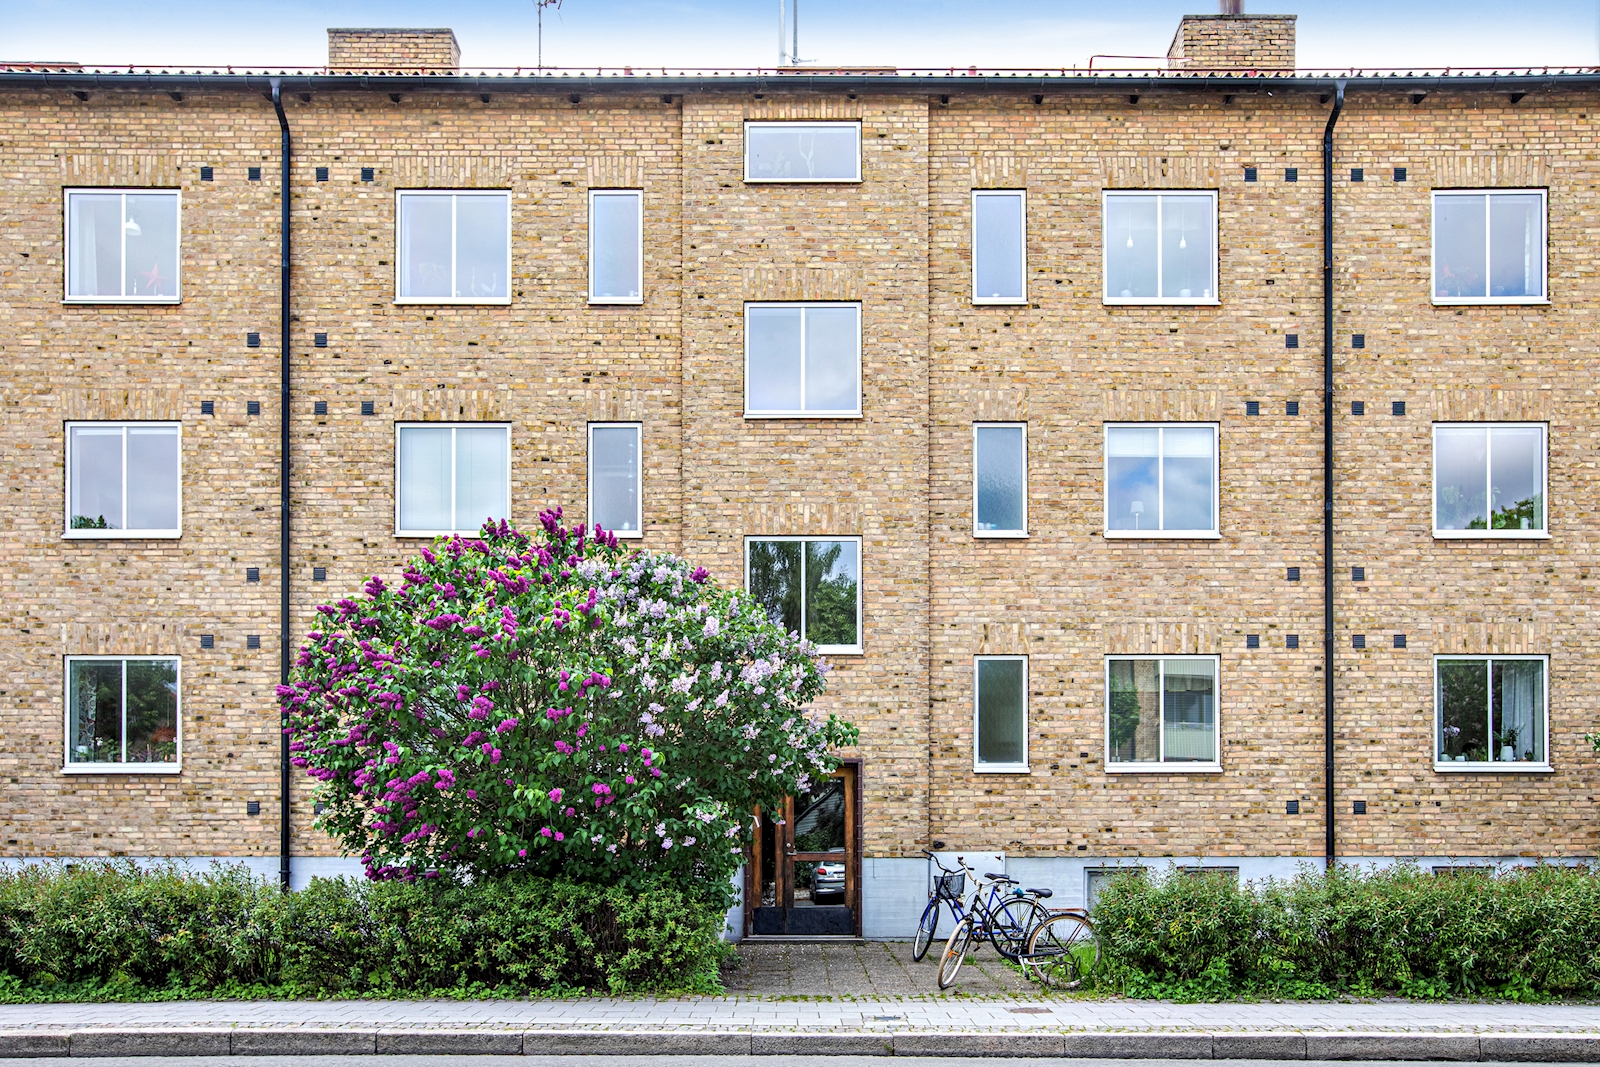 Bostadsrätt i Väster, Lund, Skåne, Byggmästaregatan 25B